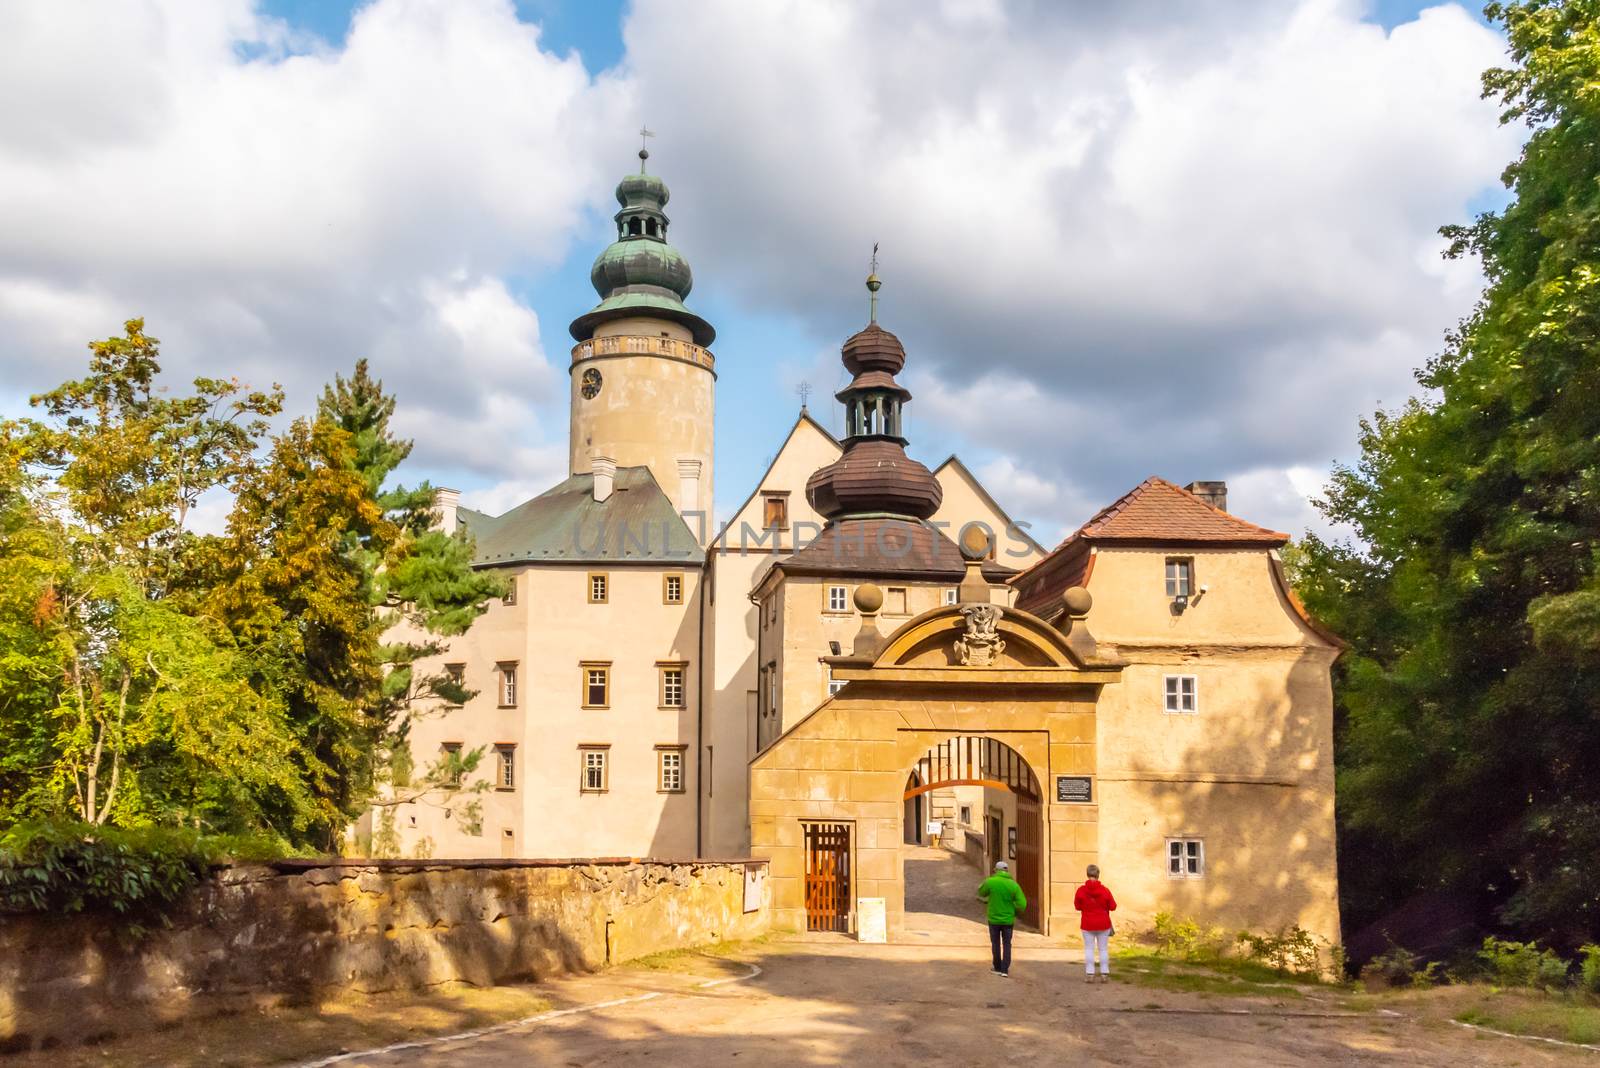 Lemberk Castle in northern Bohemia, Jablonne v Podjestedi, Czech Republic by pyty